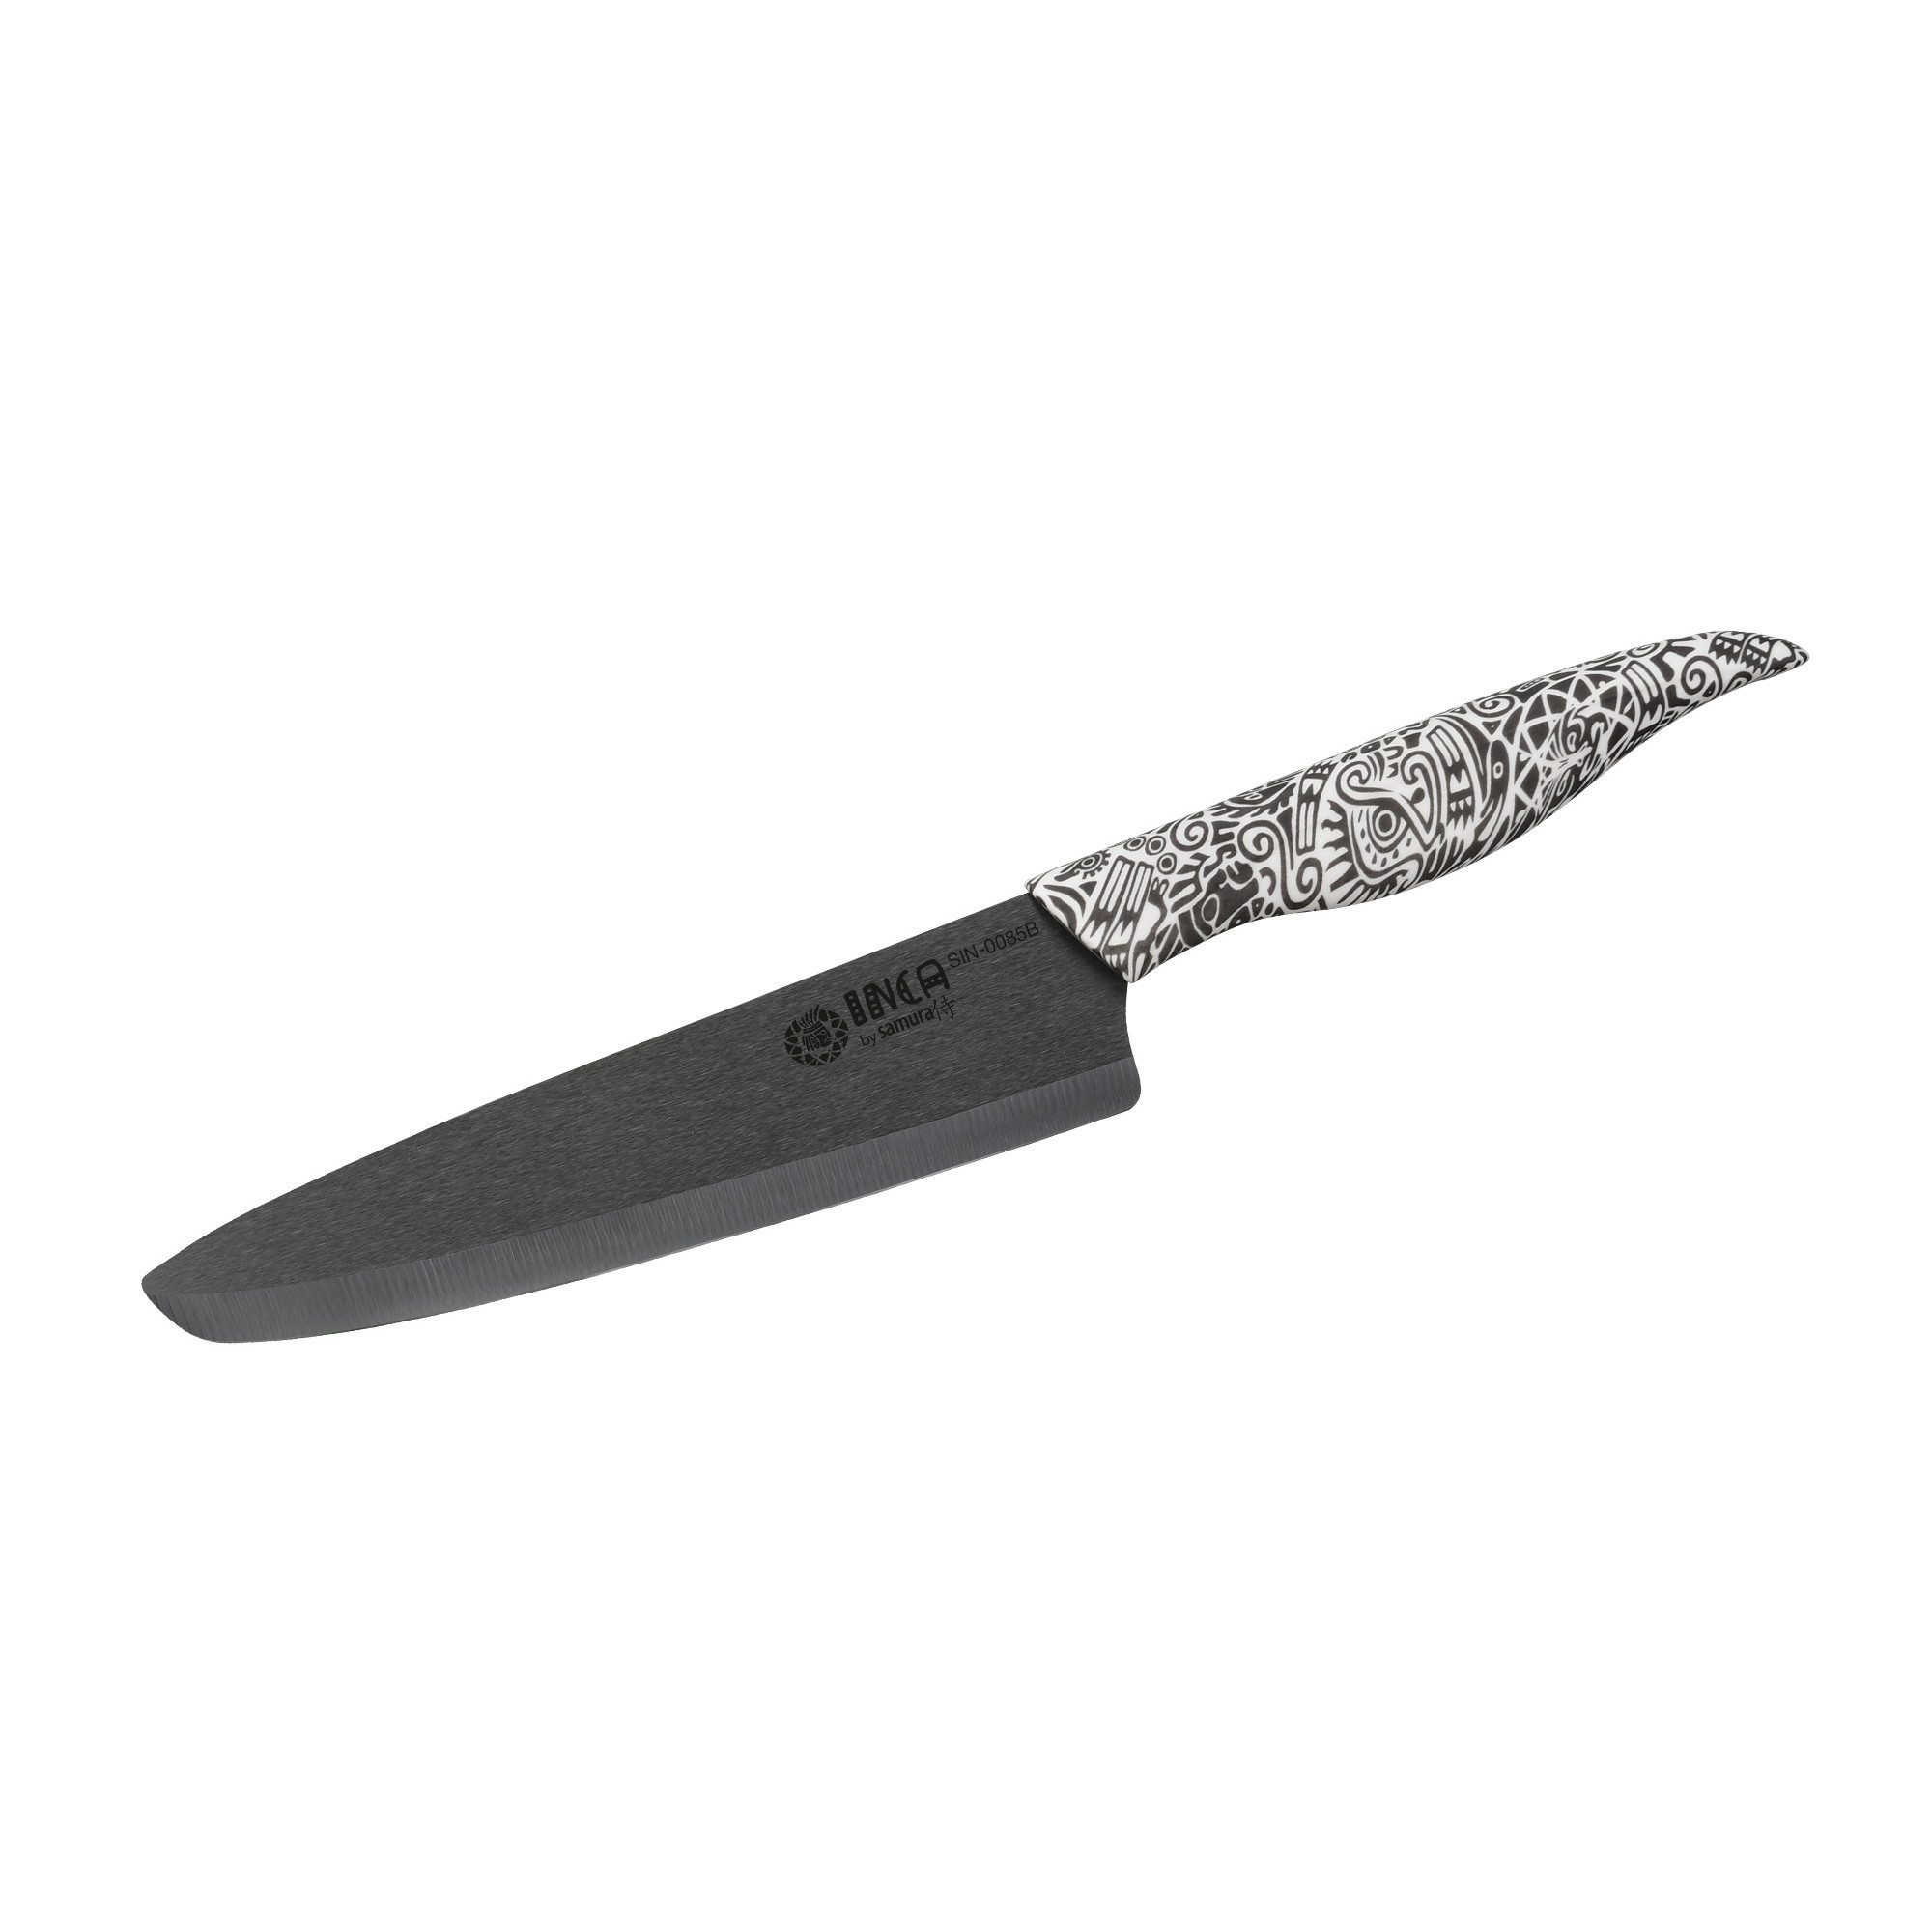 Нож кухонный Шеф Samura Inca 187 мм, чёрная циркониевая керамика, рукоять пластик